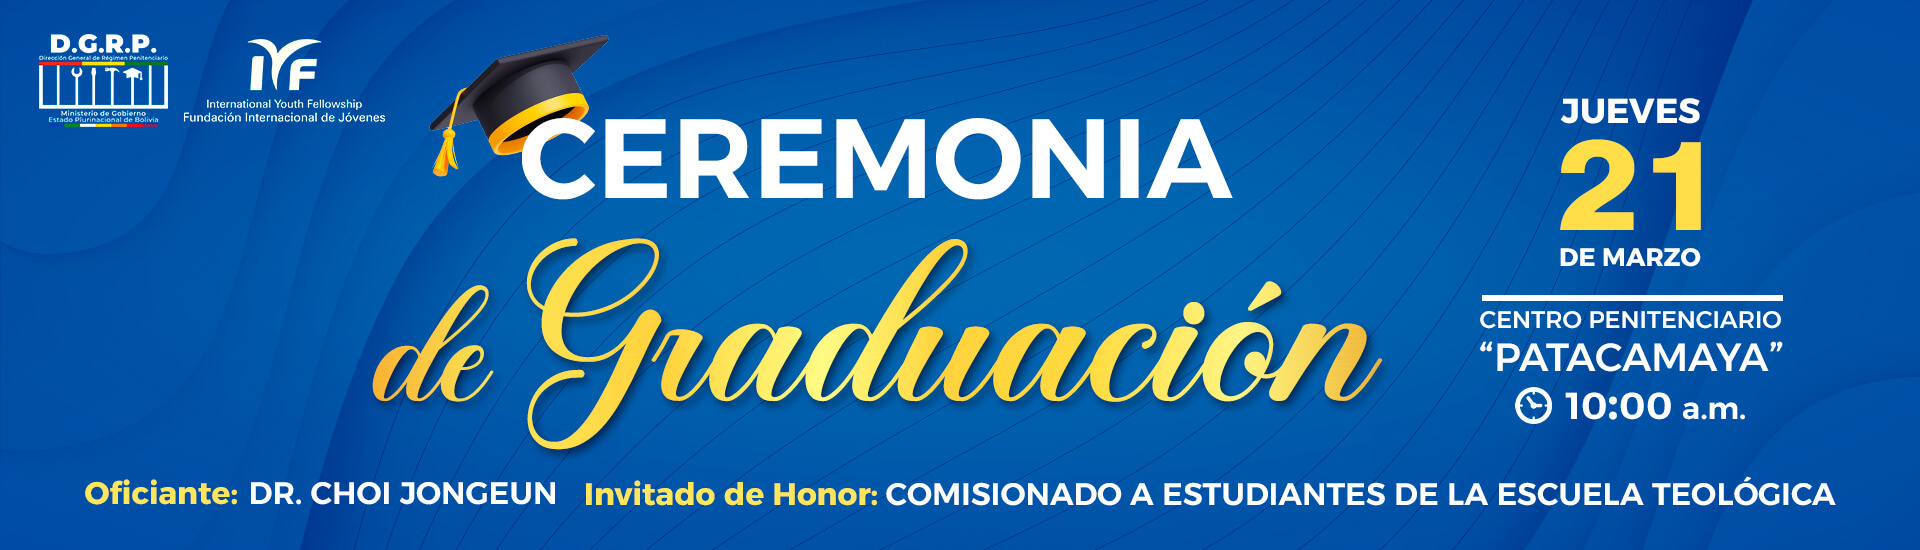 Página Iyf Ceremonia de Graduación